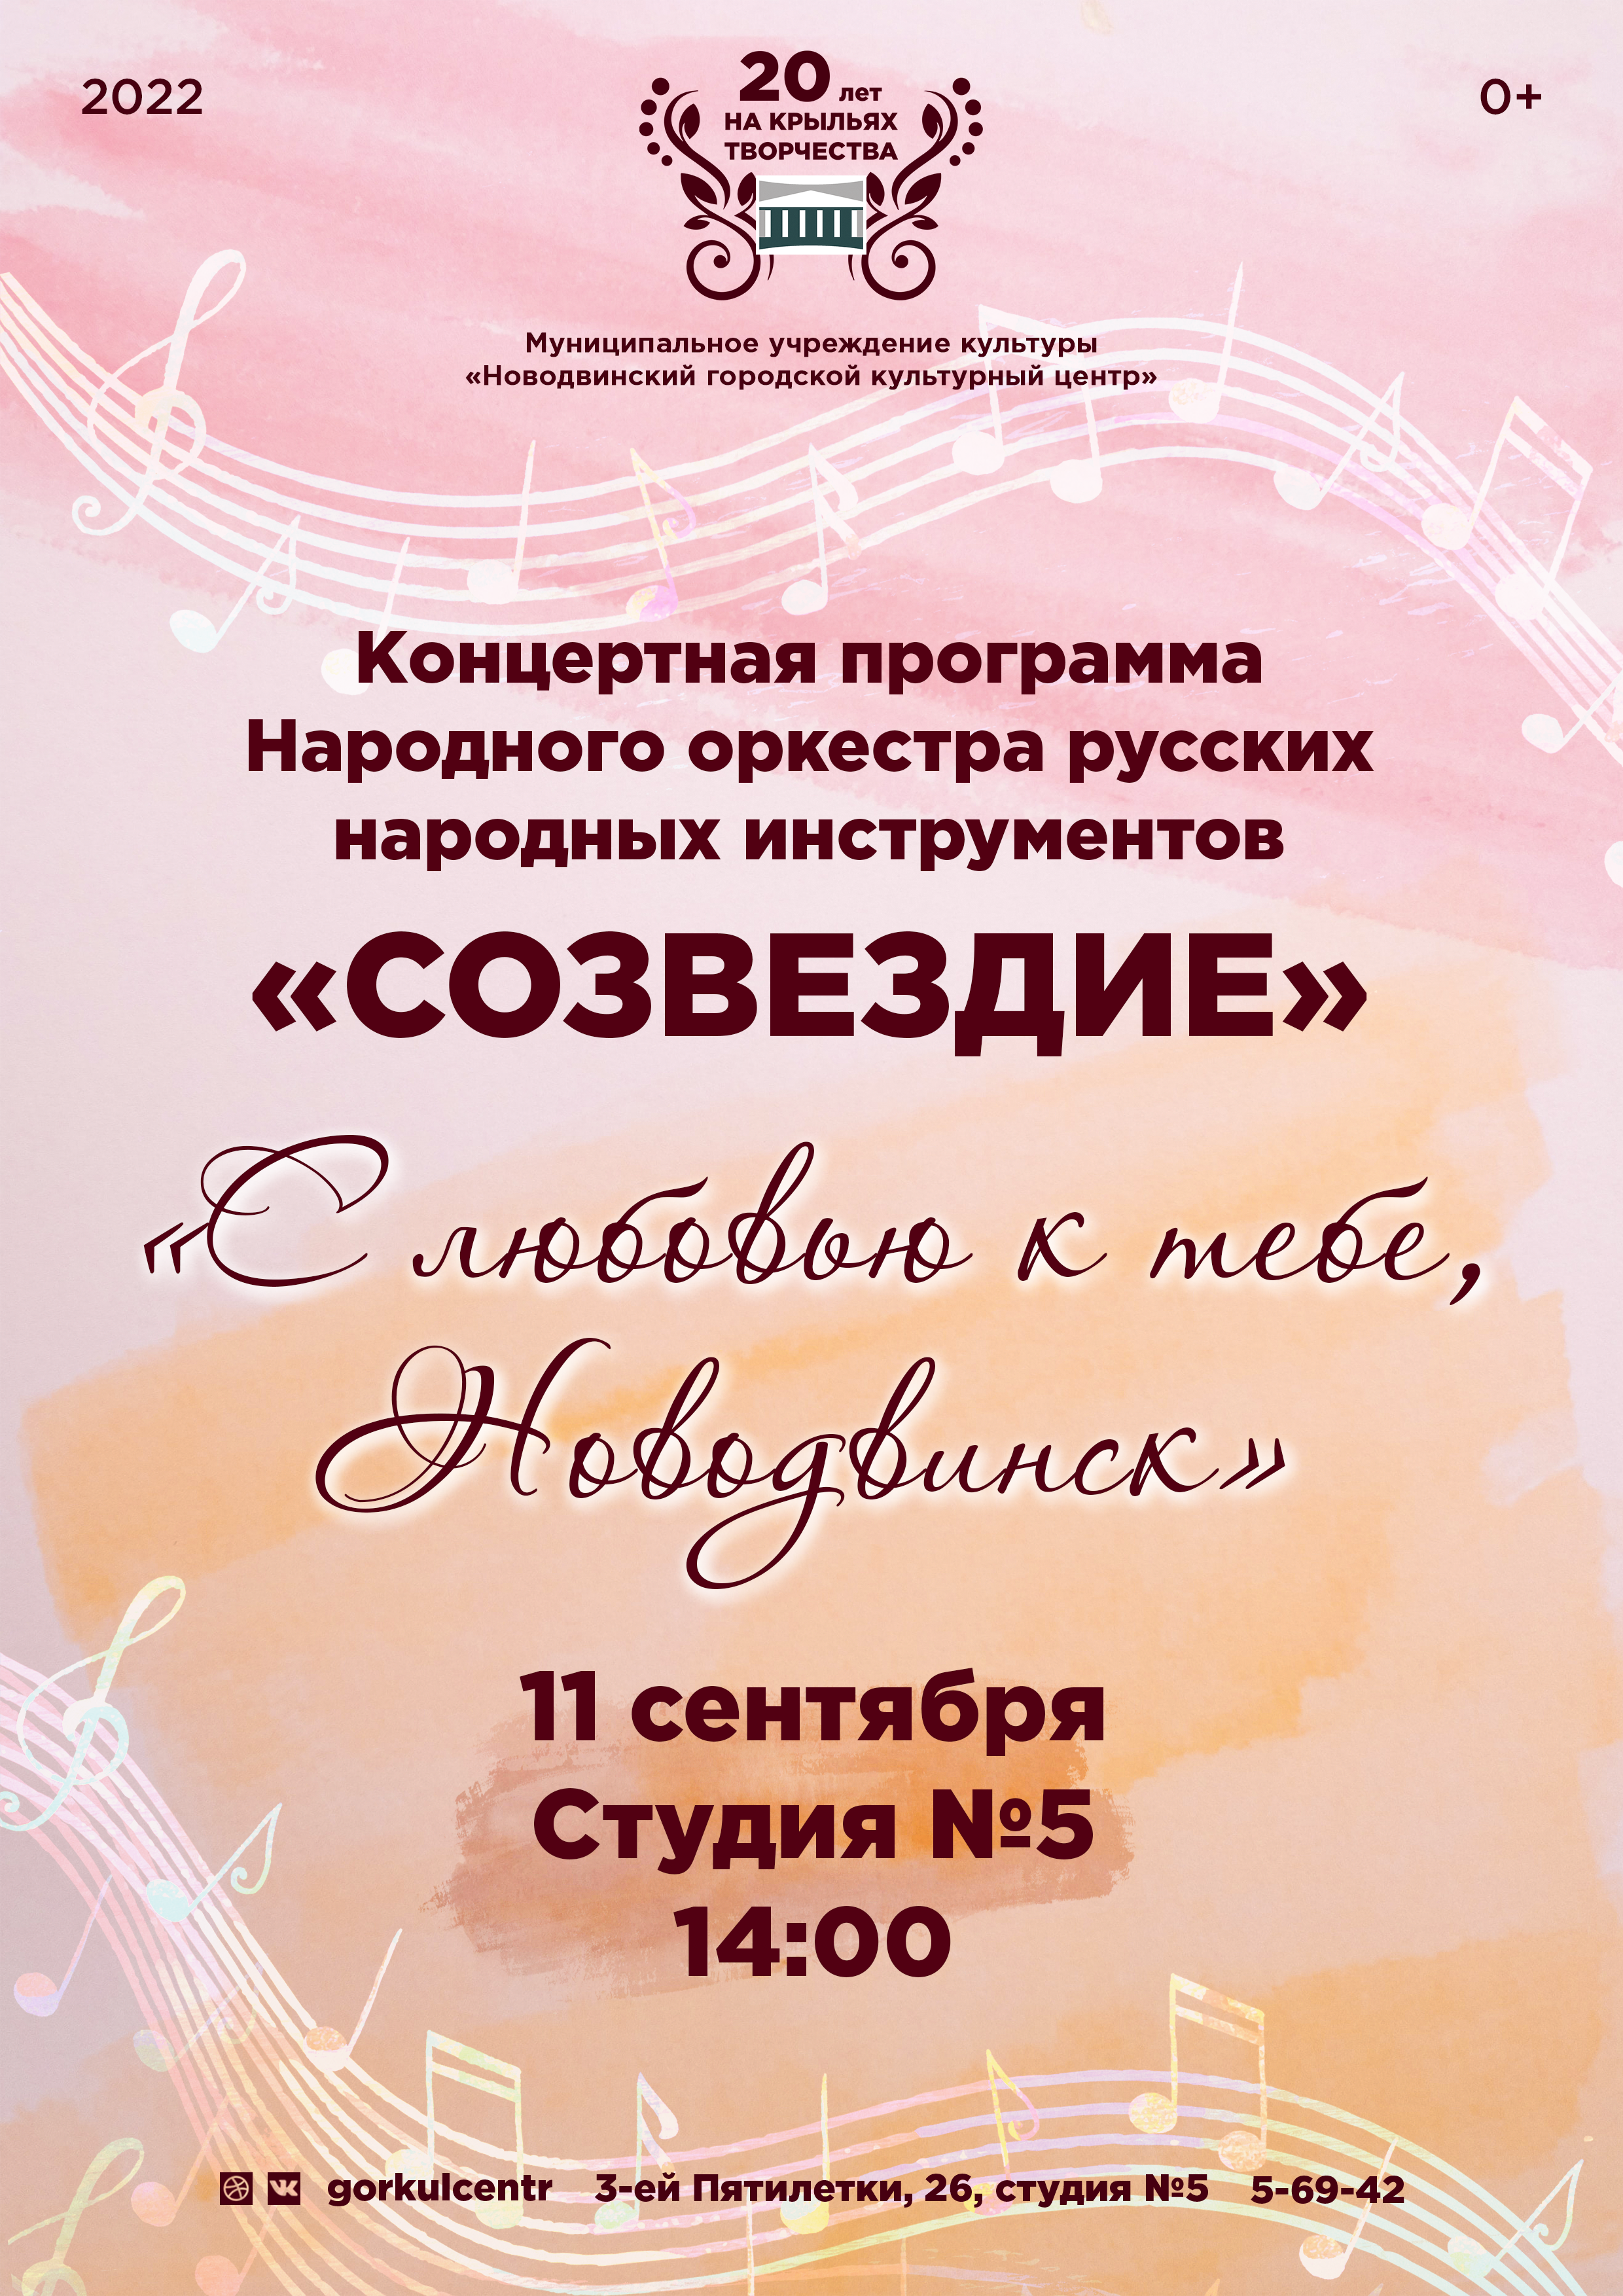 Народный оркестр русских народных инструментов «Созвездие» приглашает на концертную программу!